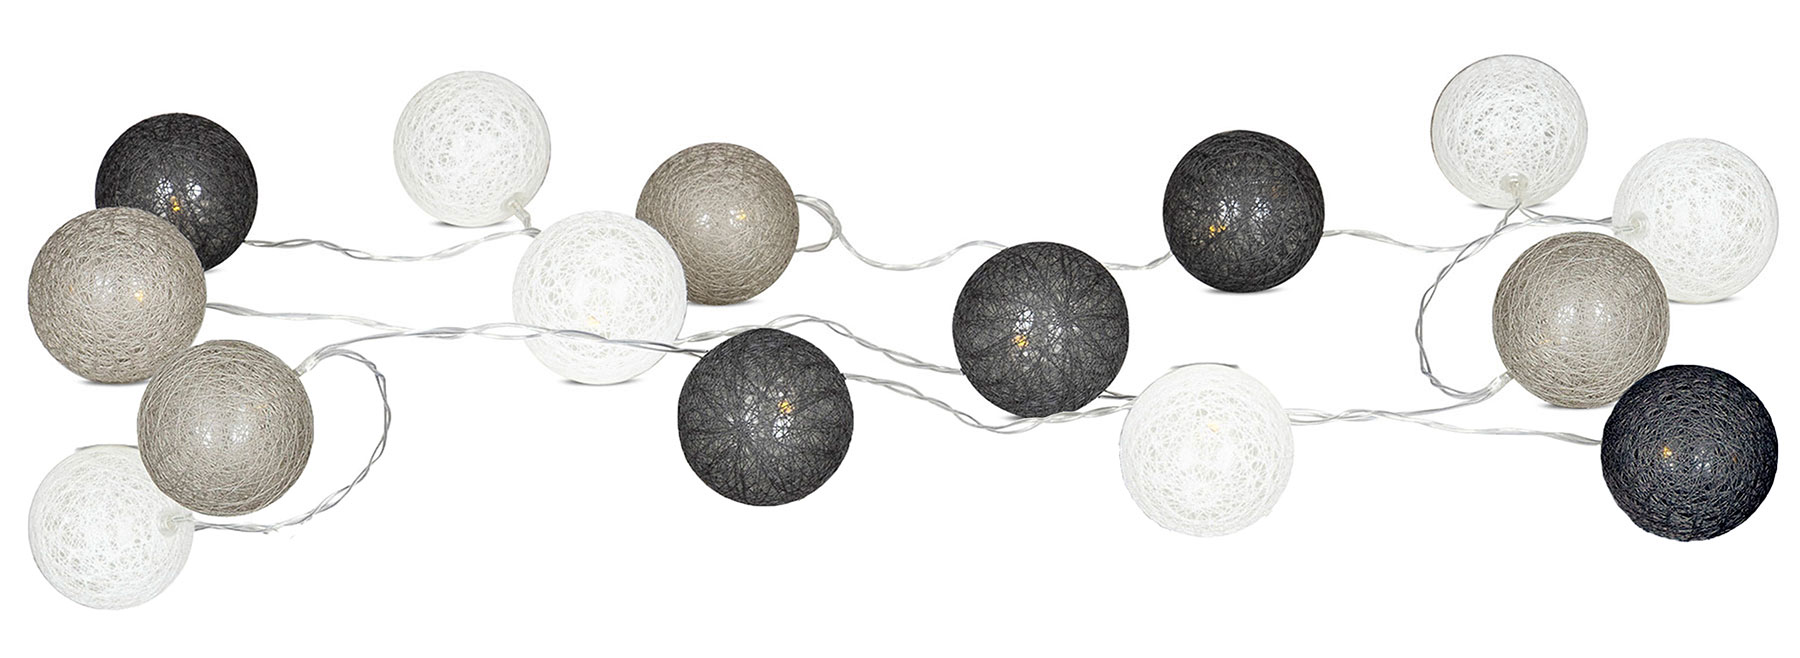 Lichterkette mit 10 Baumwoll-Lampions, weiss-grau-schwarz, Girlande, Ø 6cm  - Ihr Elektronik-Versand in der Schweiz